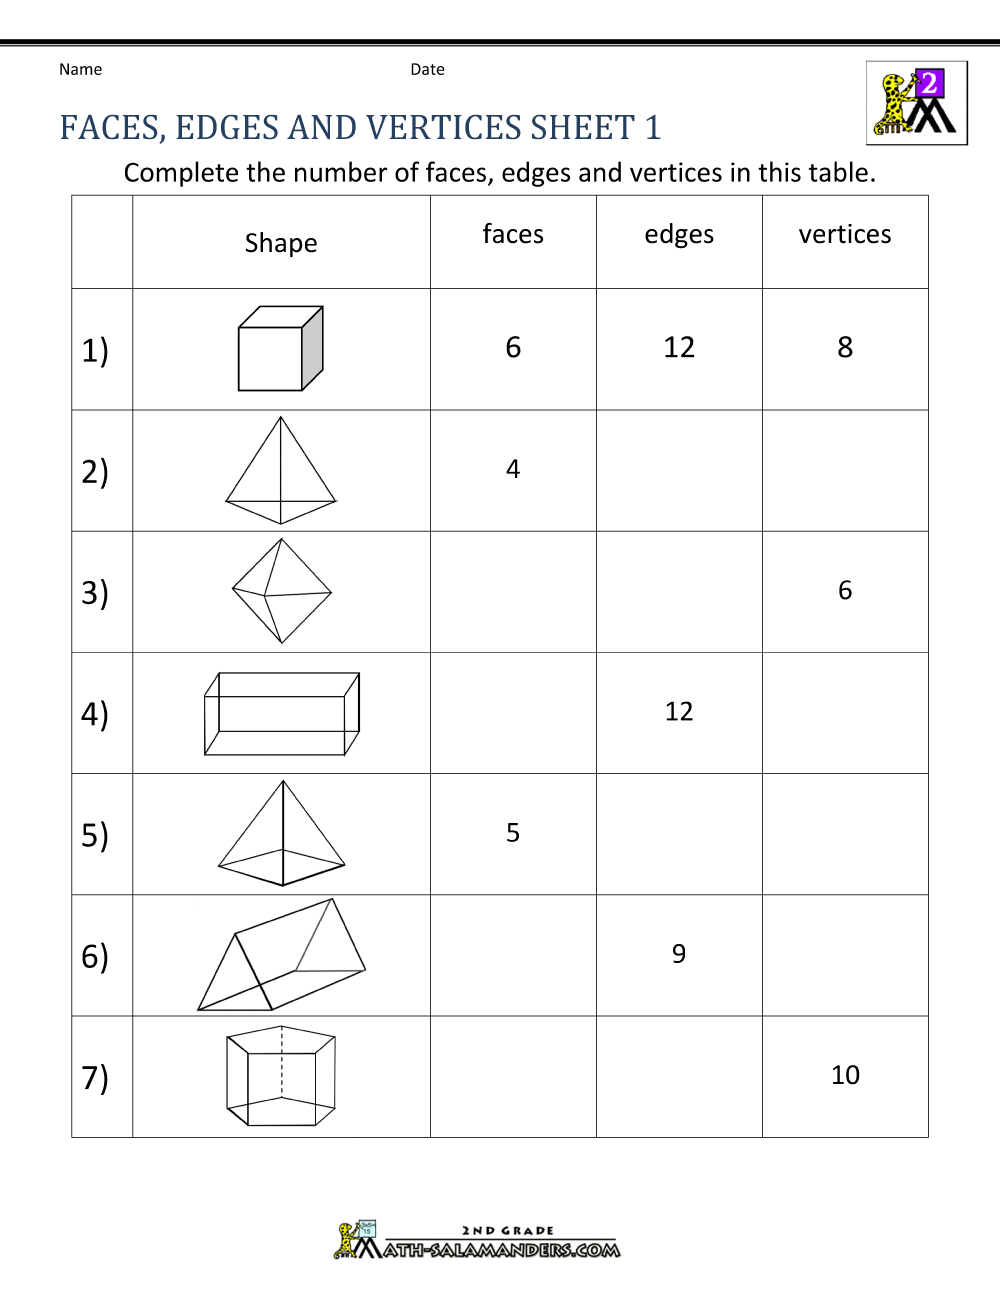 3d-shapes-worksheets-2nd-grade-3d-shapes-worksheets-2nd-grade-piper